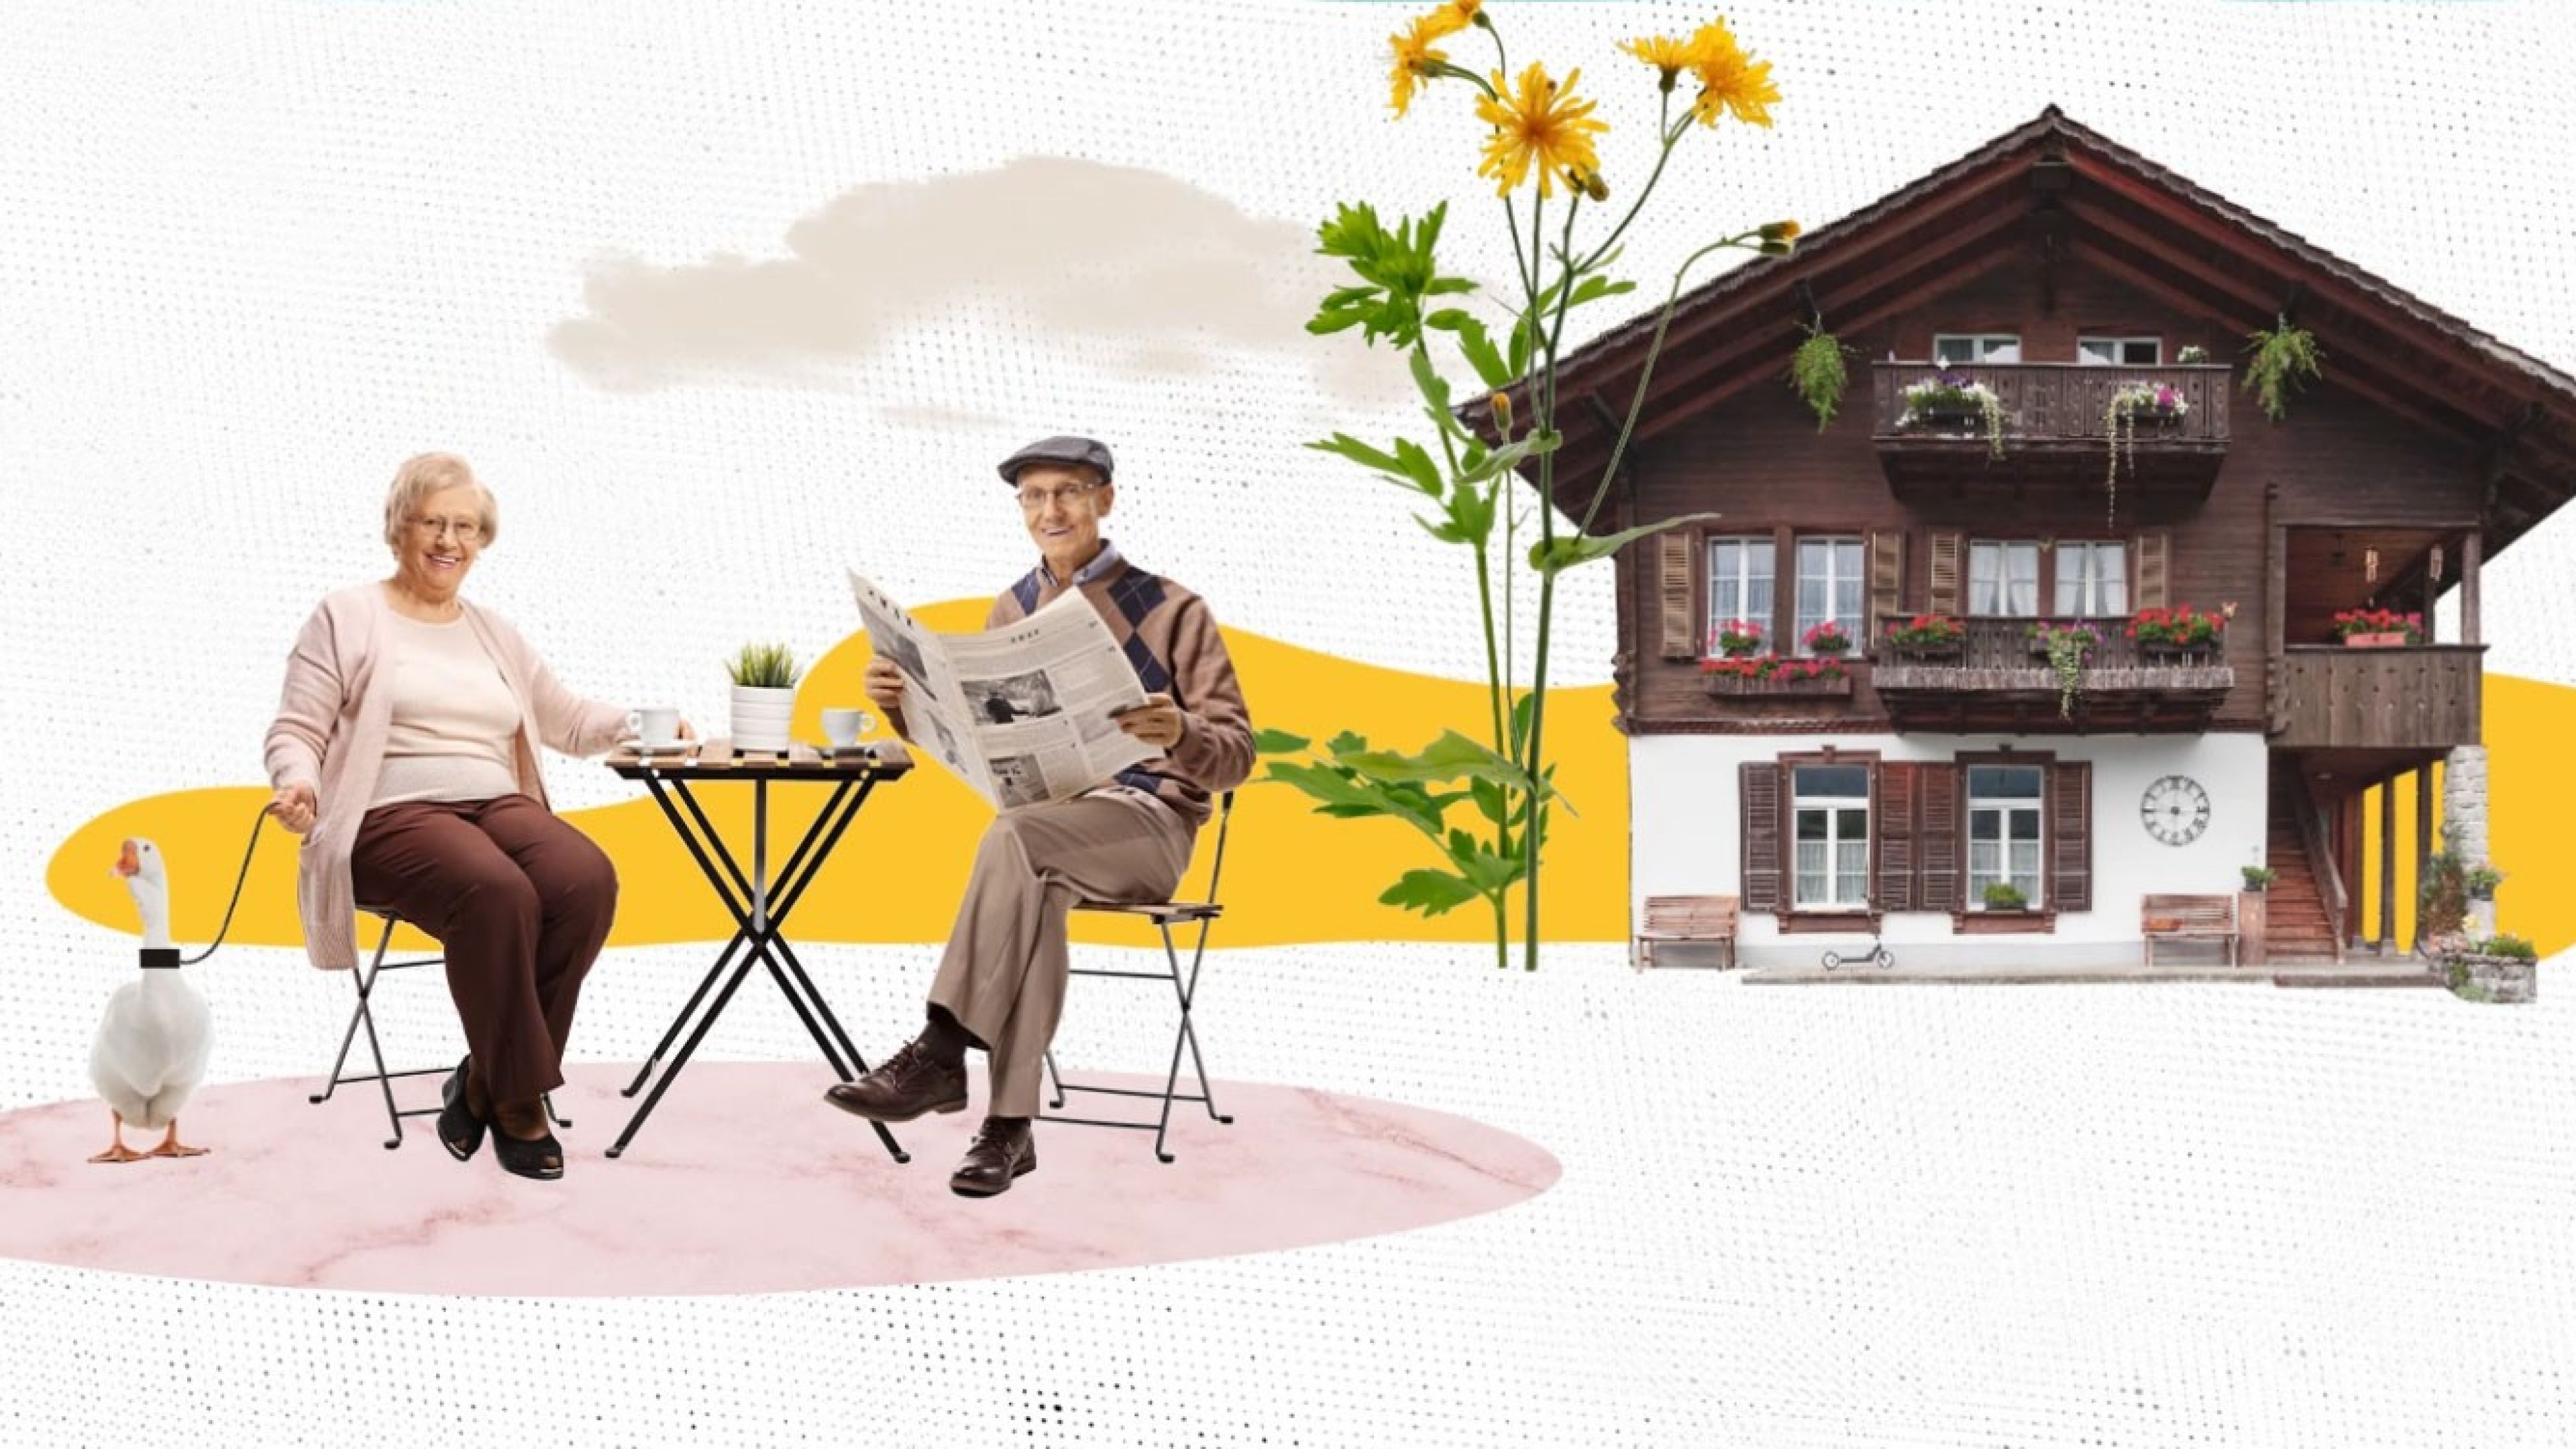 Fotocollage eines Rentnerpaares an einem Tisch mit Haus im Hintergrund